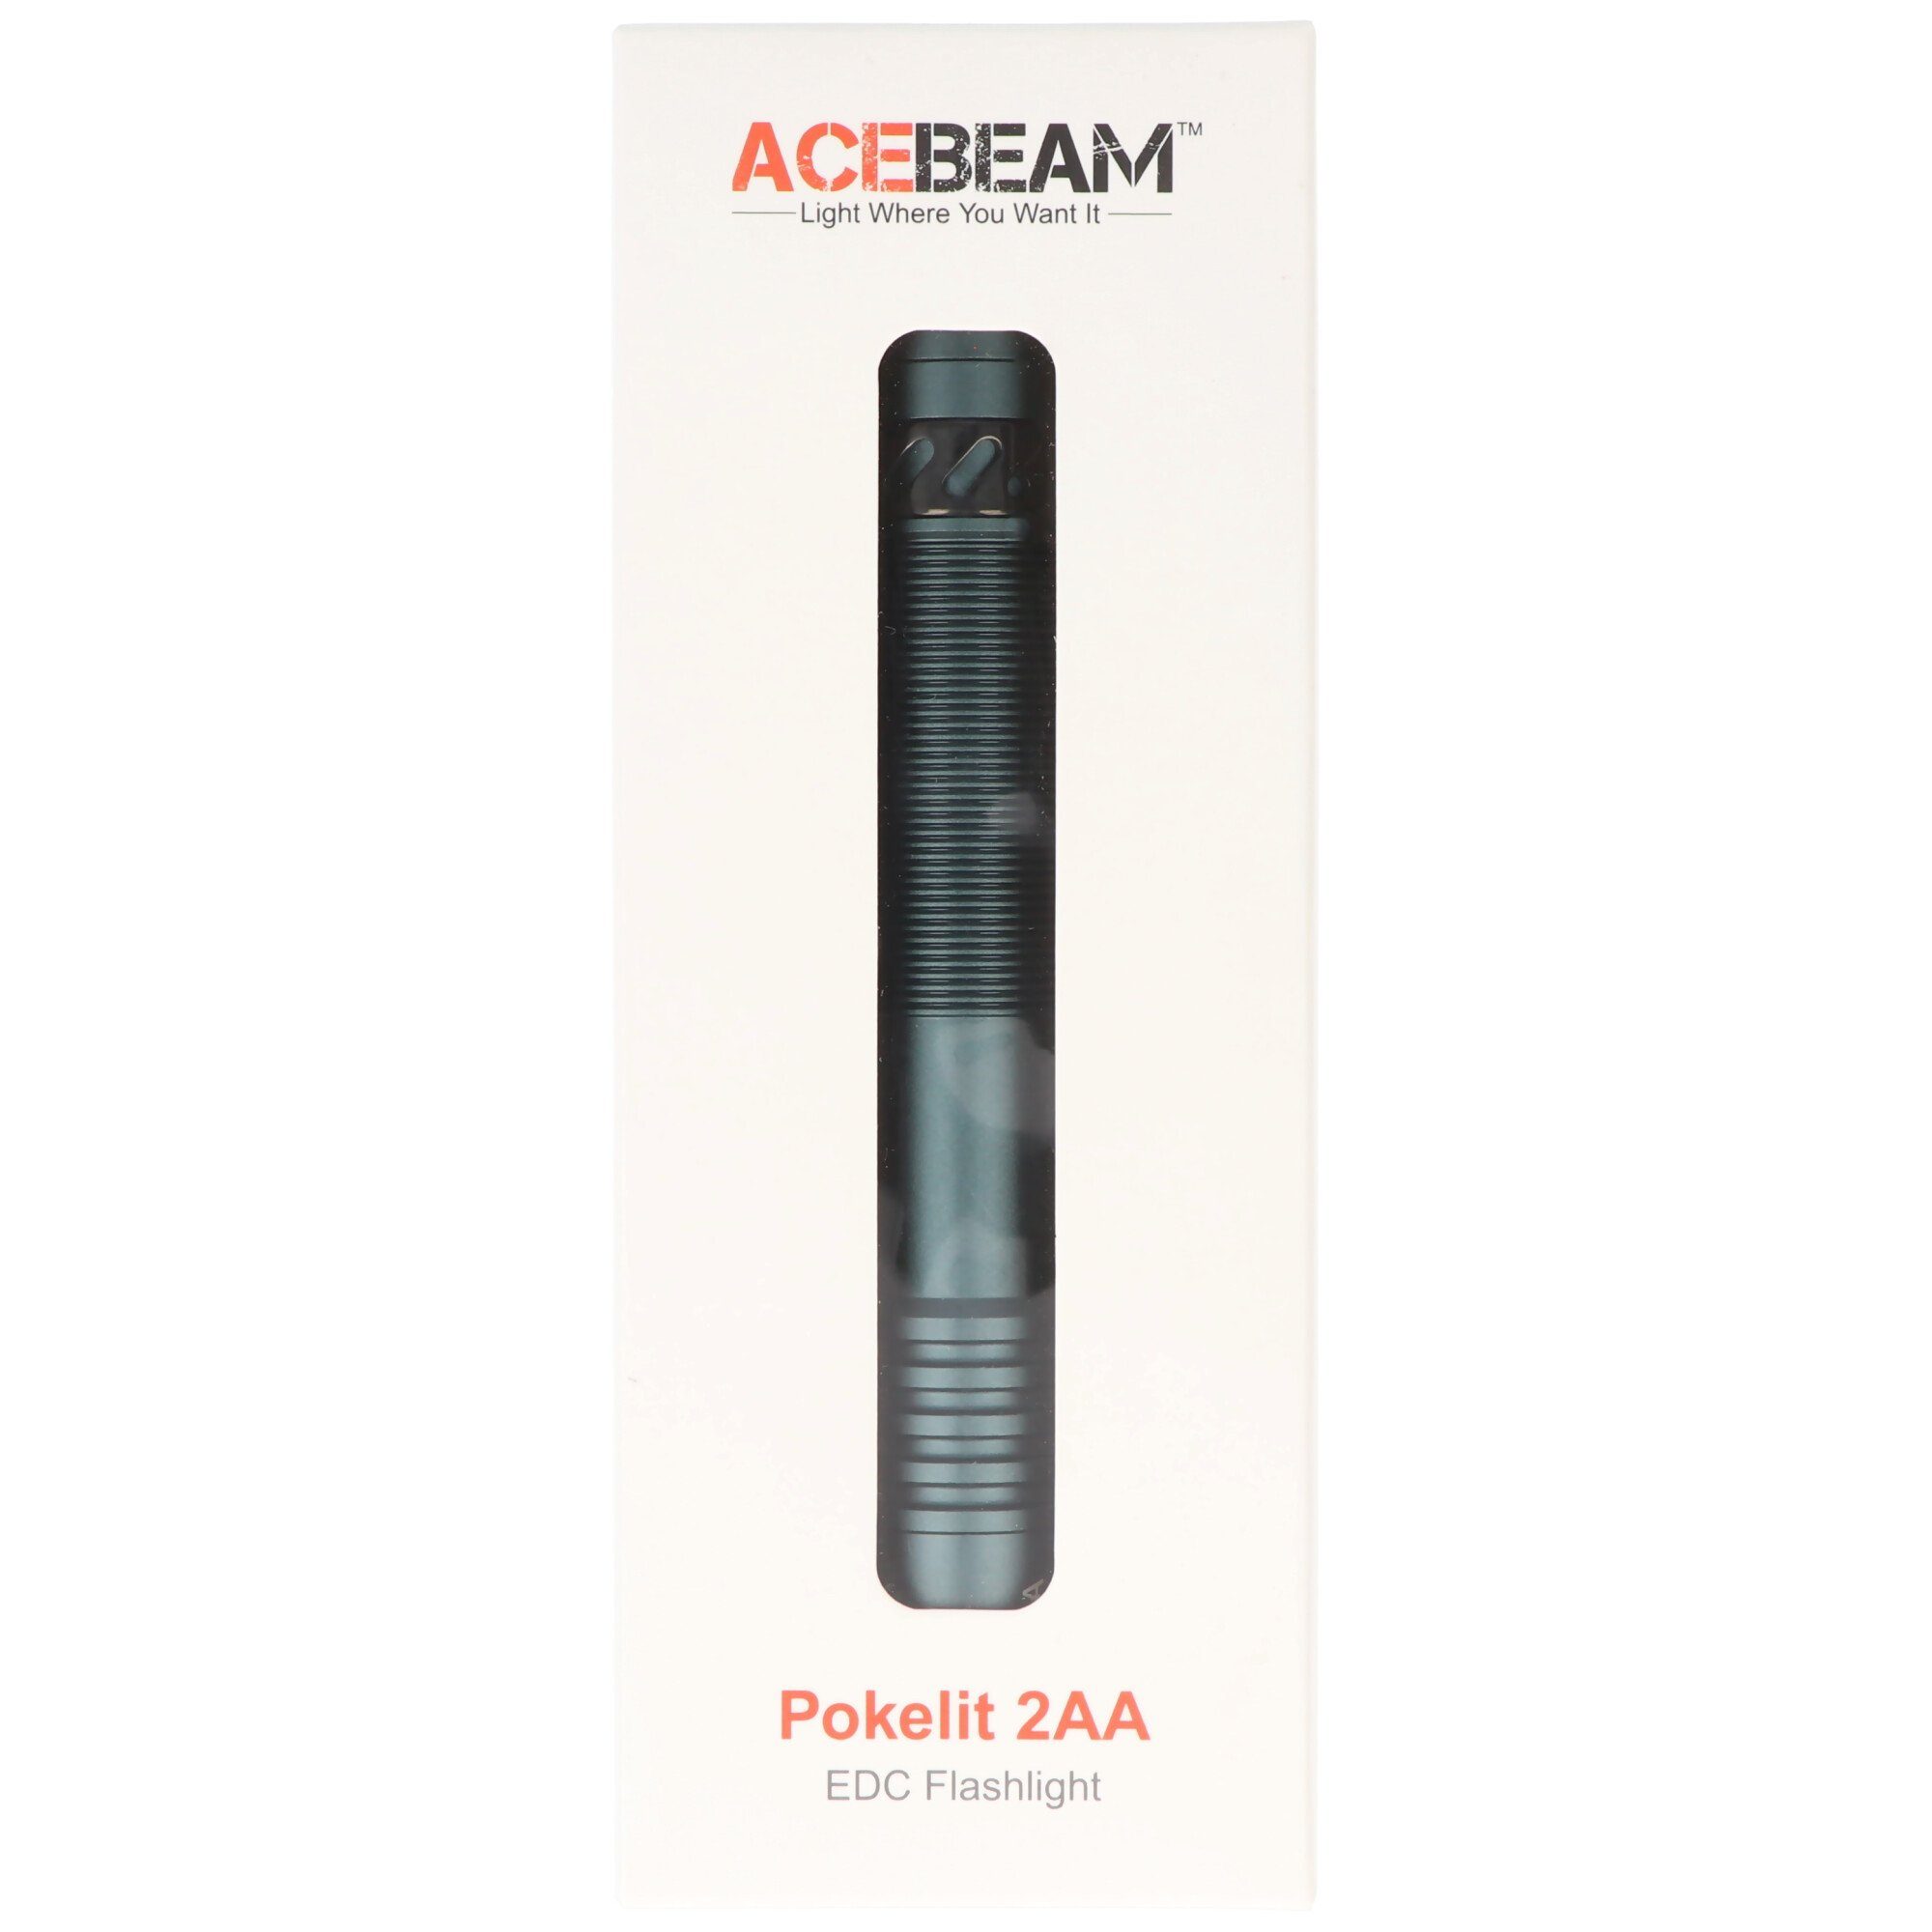 600 den Lumen, Acebeam AceBeam ideal EDC-Taschenlampe, Taschenlampe für LED Pokelit 2AA Alltag